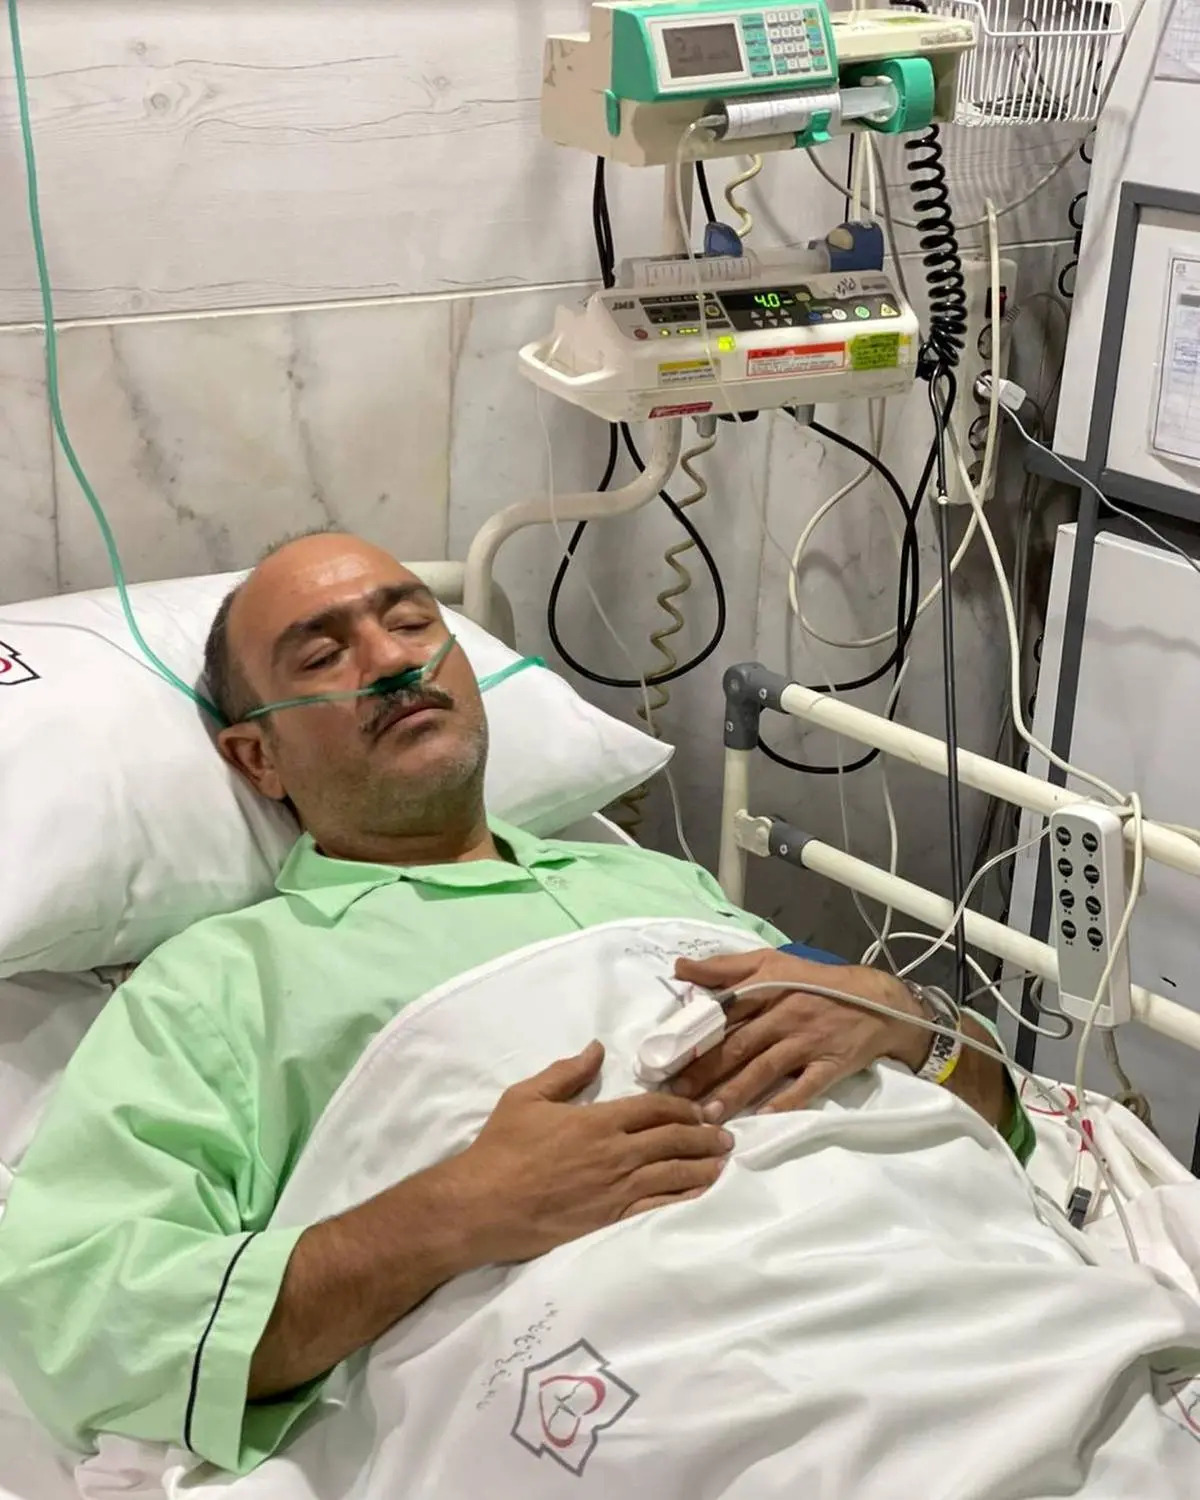 آخرین وضعیت مهران غفوریان از زبان همسرش | فیلم دردناک از مهران غفوریان روی تخت بیمارستان